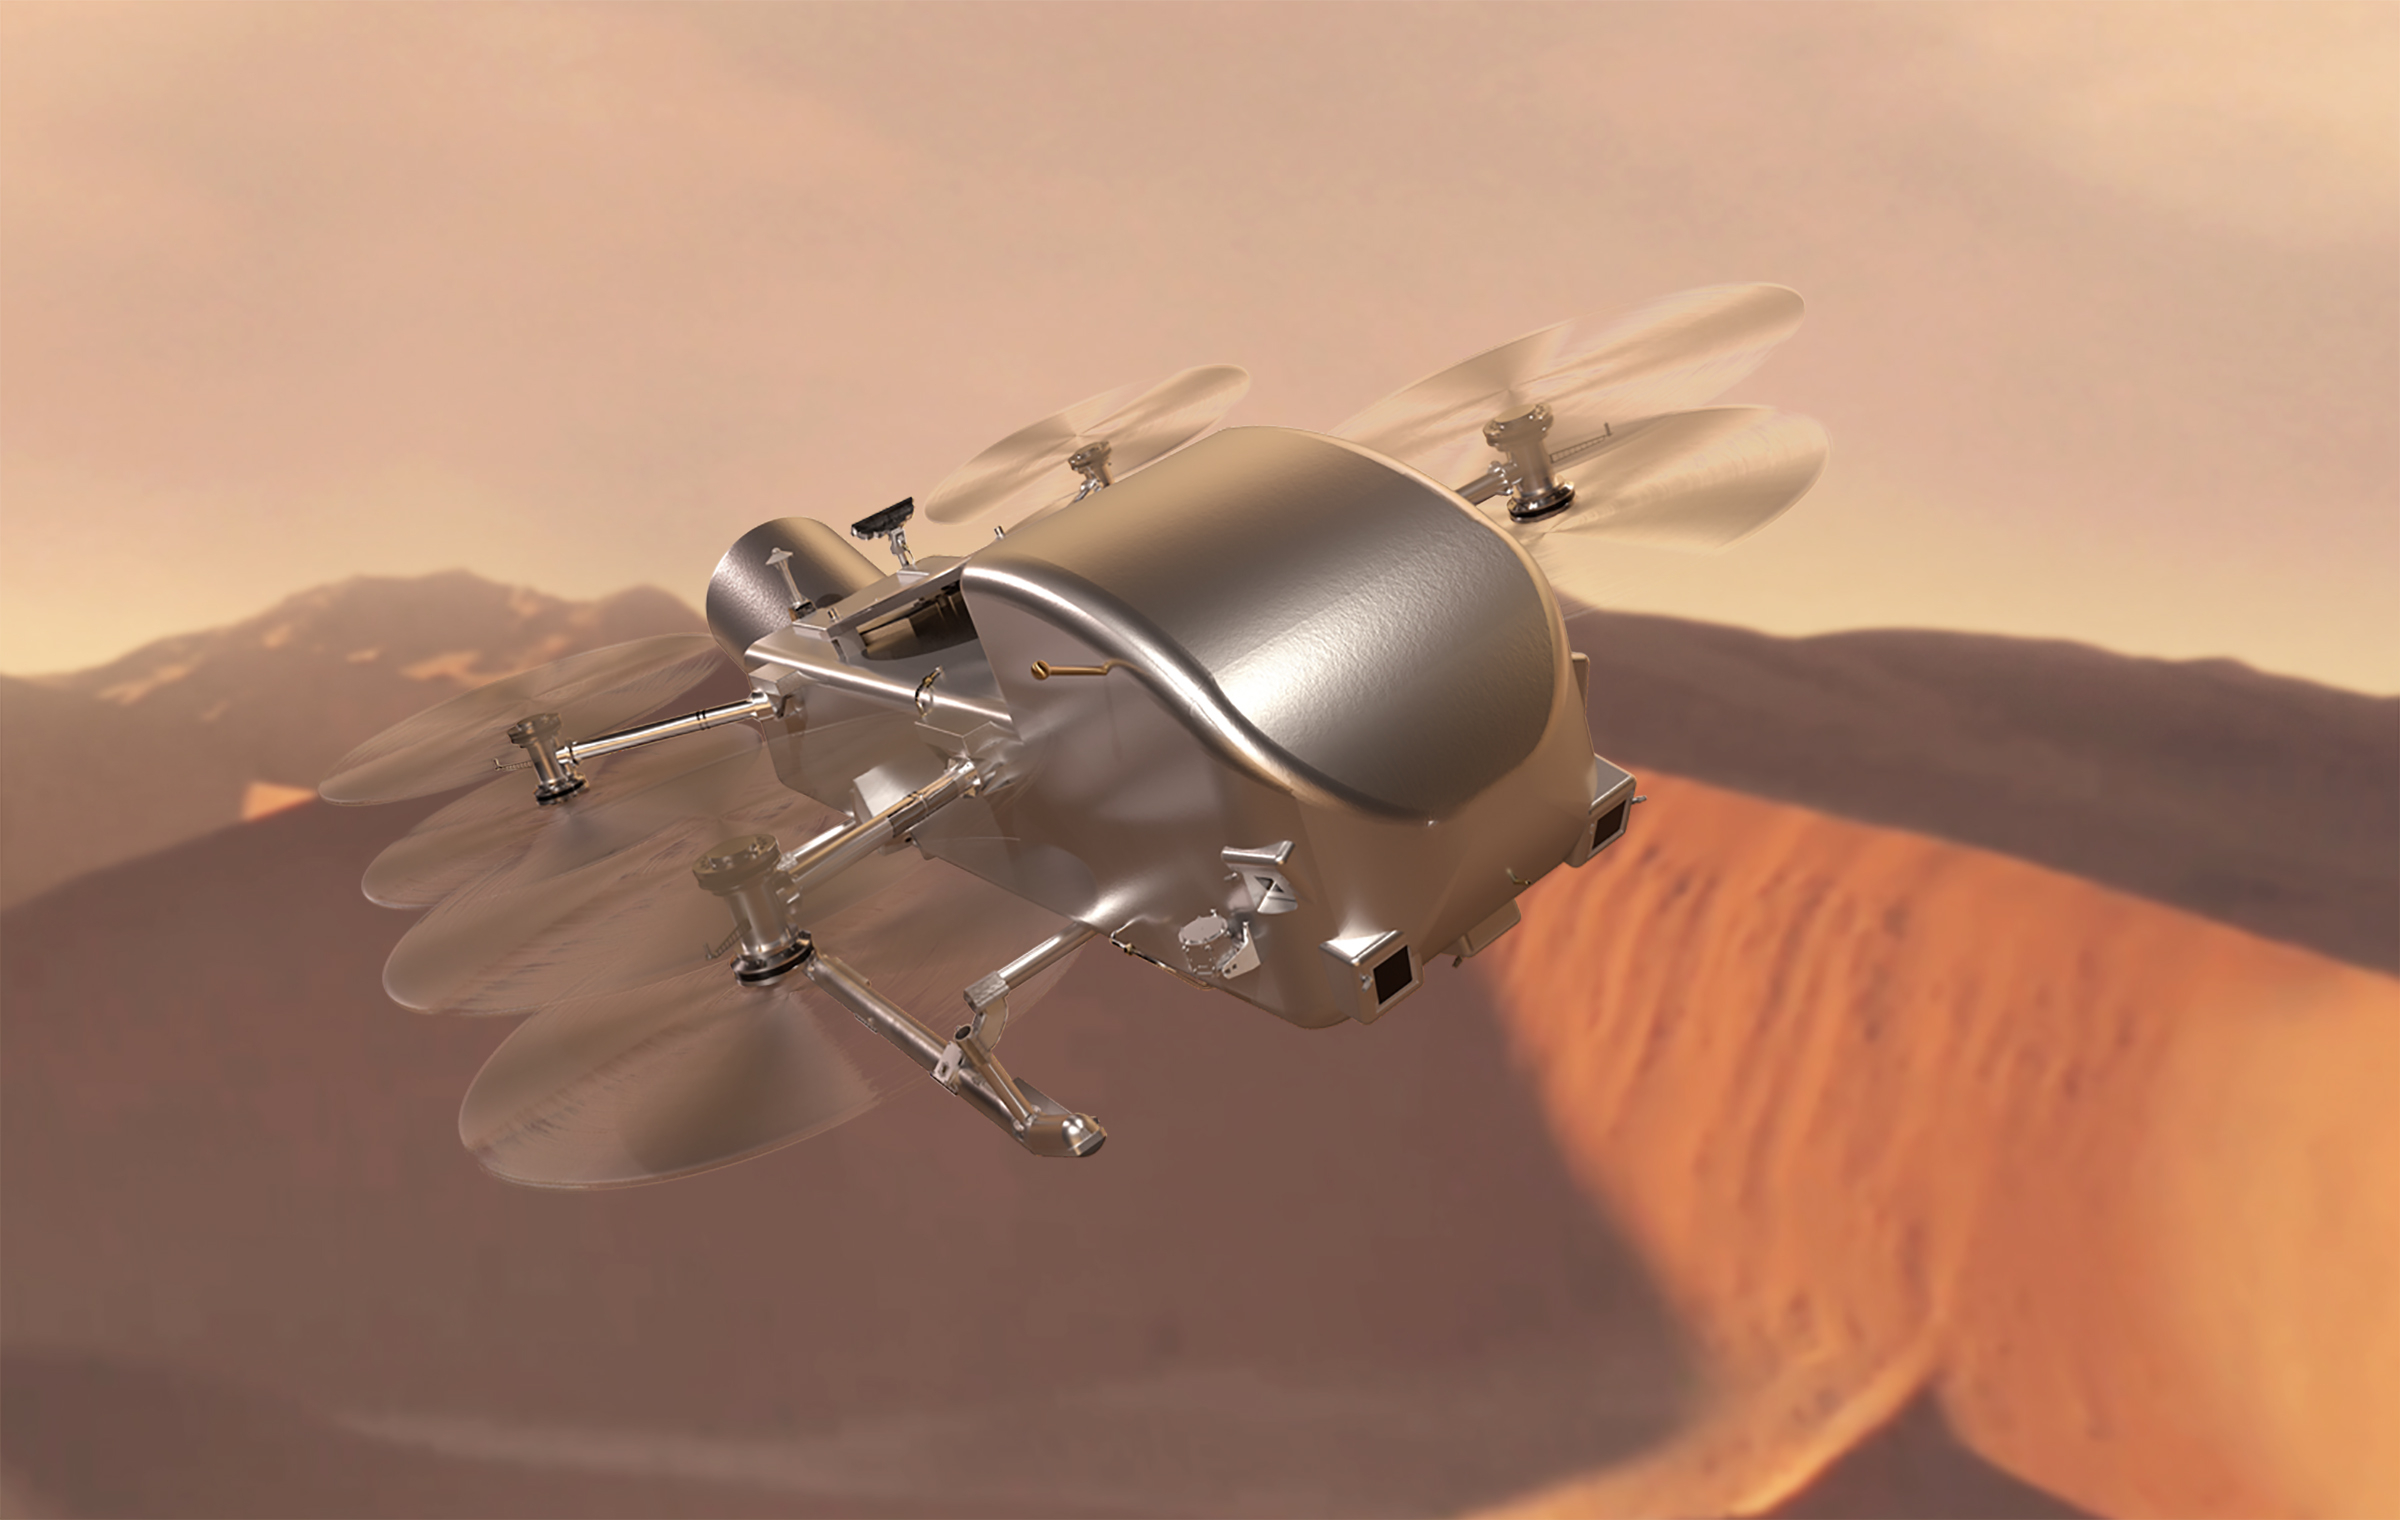 Długi, chromowany dron z sześcioma śmigłami na poziomie ciała, przypominający ważkę.  Leci nad krajobrazem z różowymi/brązowymi wydmami.